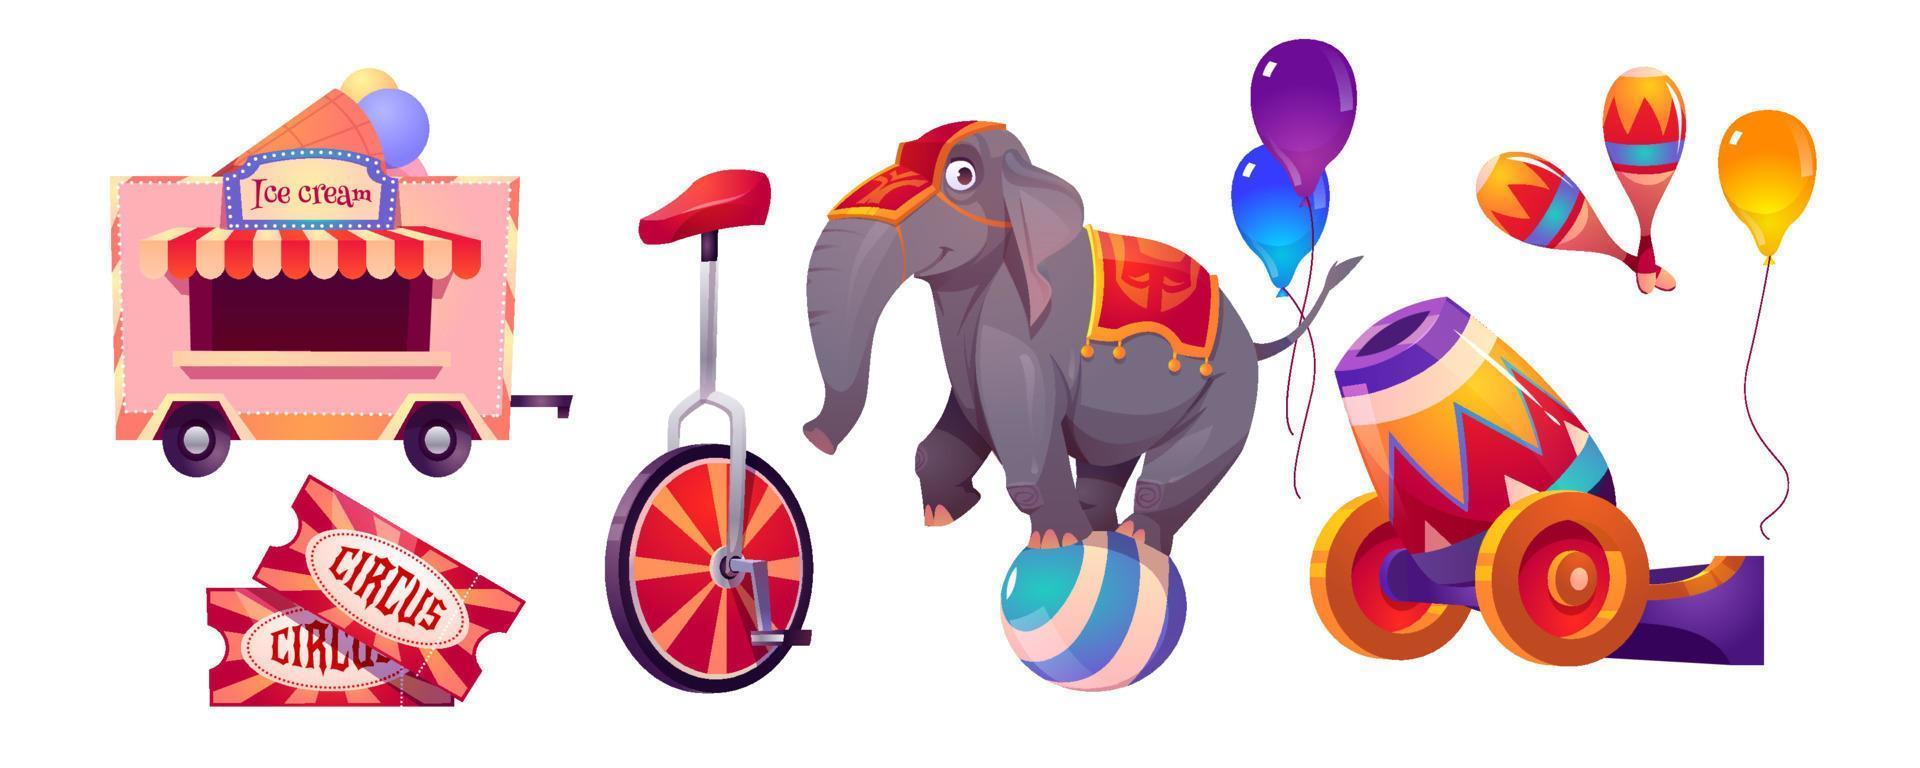 trucs de cirque et éléphant sur ballon, chapiteau vecteur